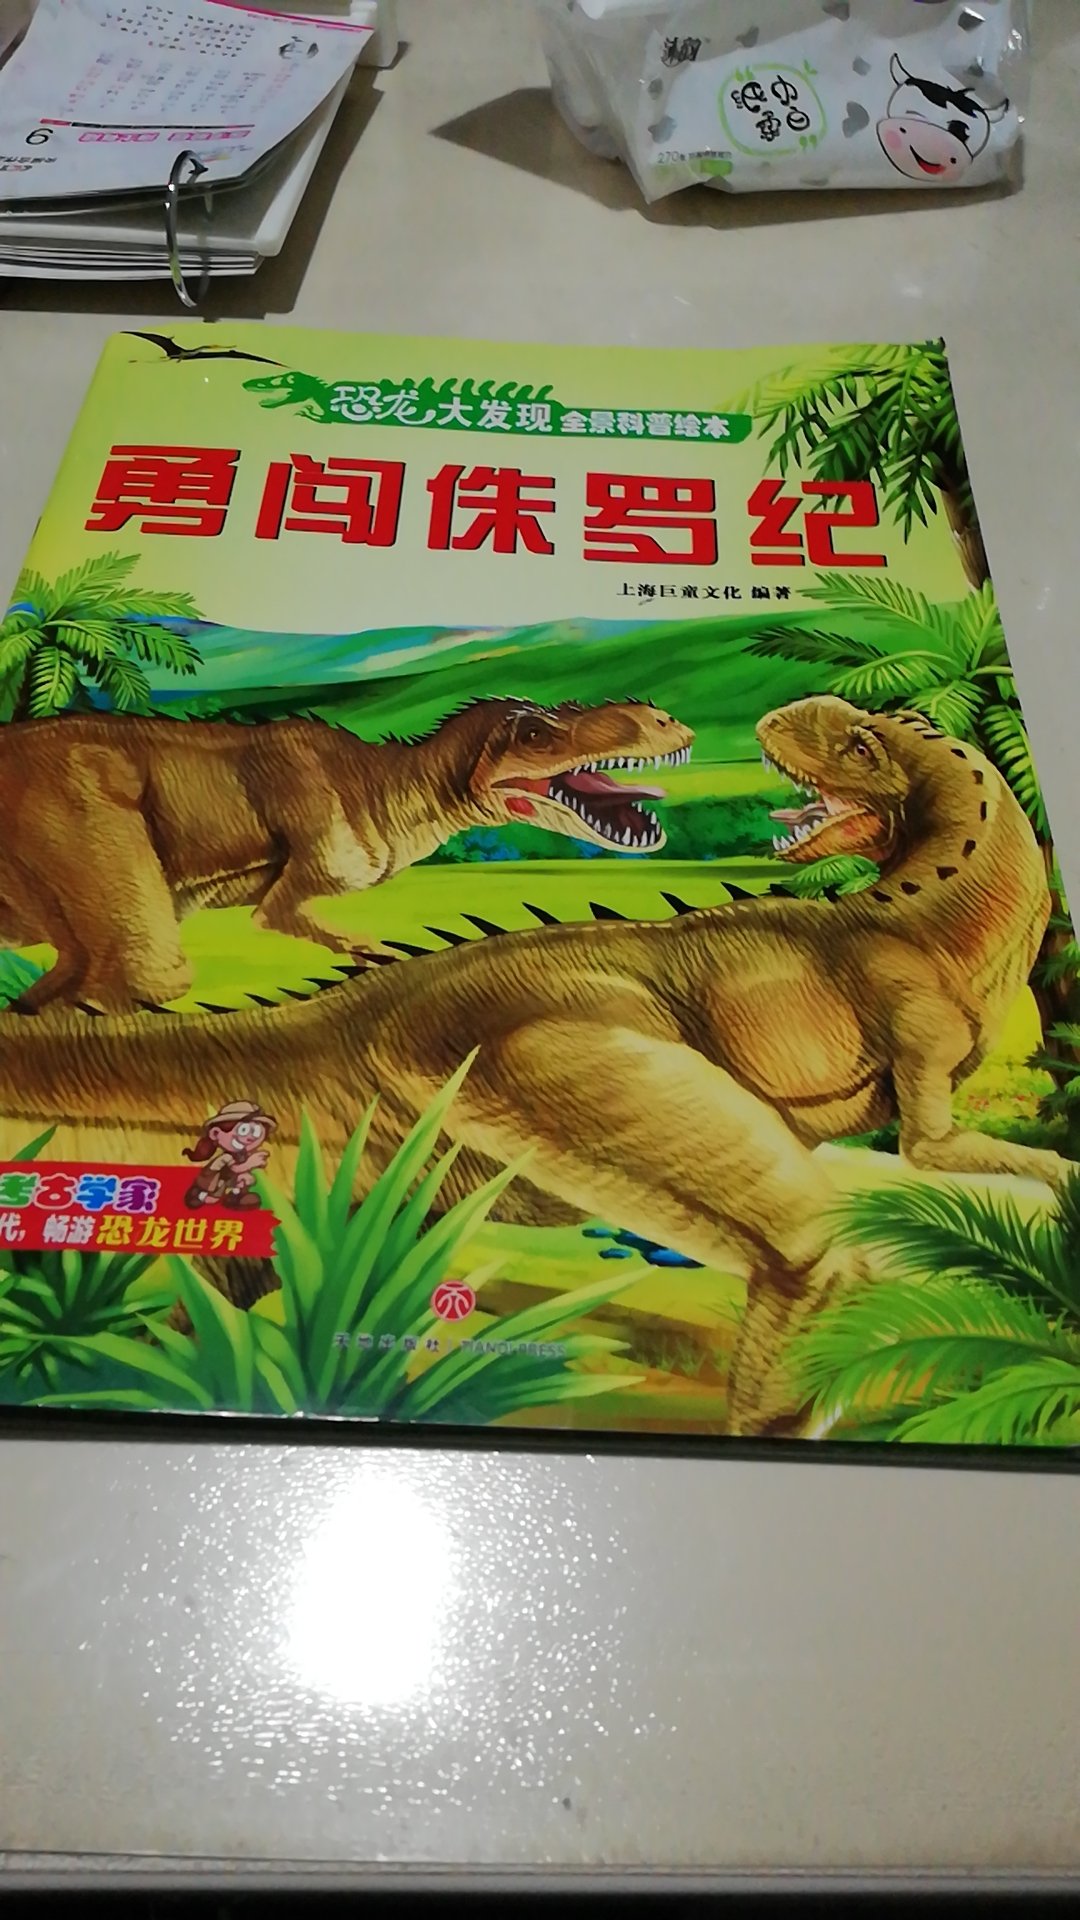 太好了，孩子非常喜欢，就是买了这两本书，孩子整天要去看恐龙。